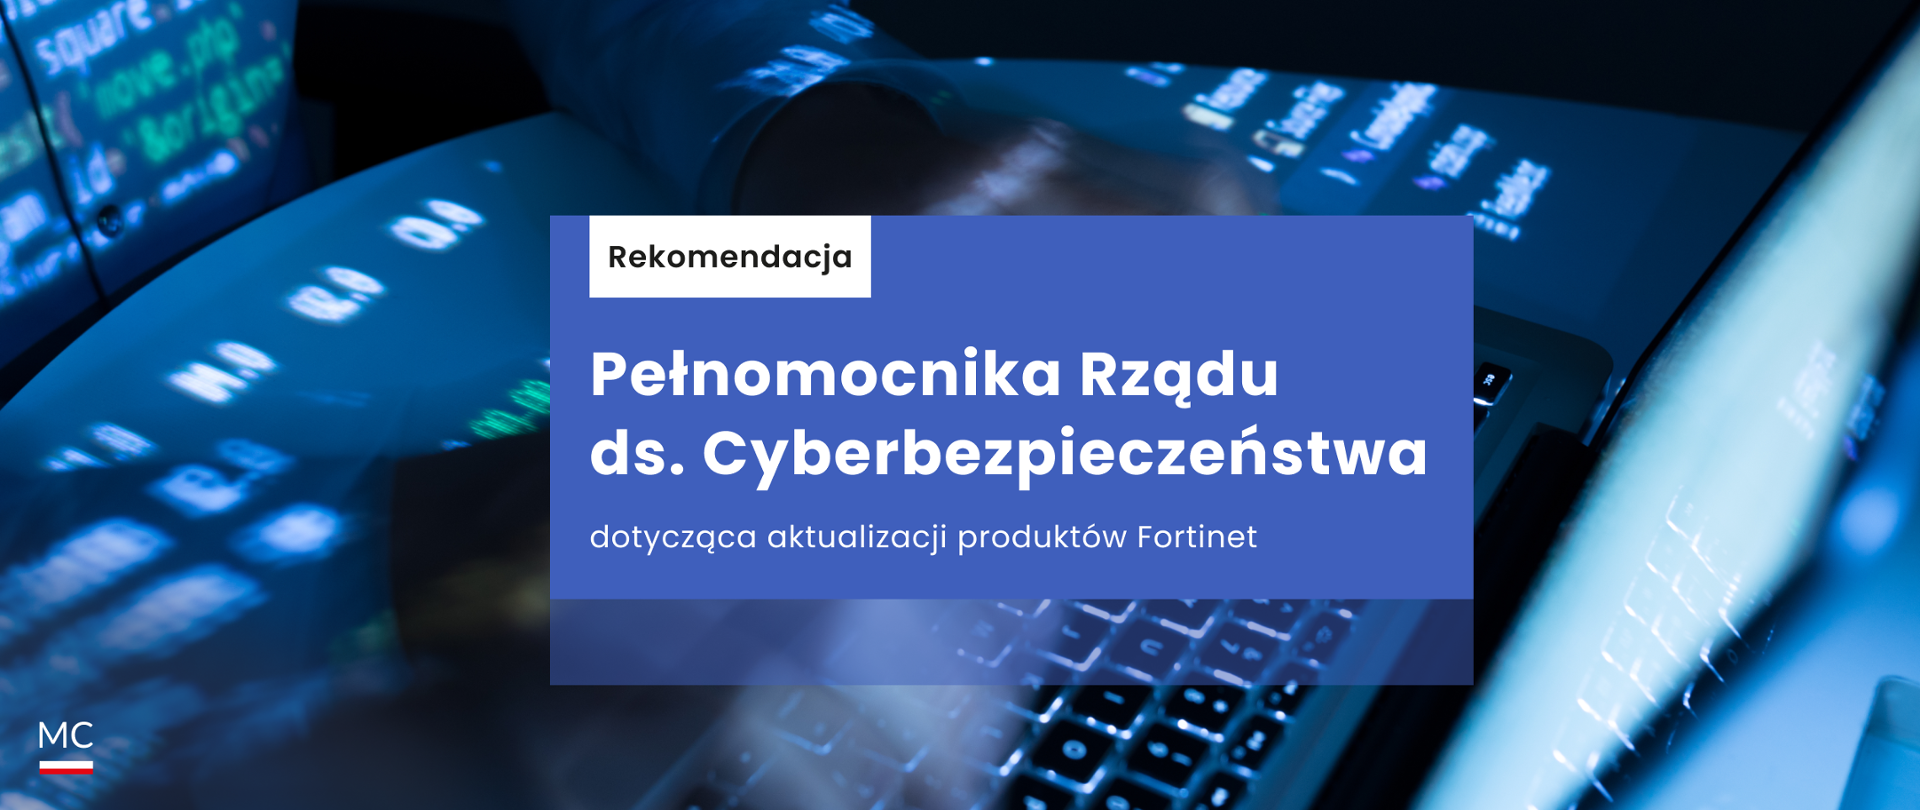 Rekomendacje Pełnomocnika Rządu ds. Cyberbezpieczeństwa